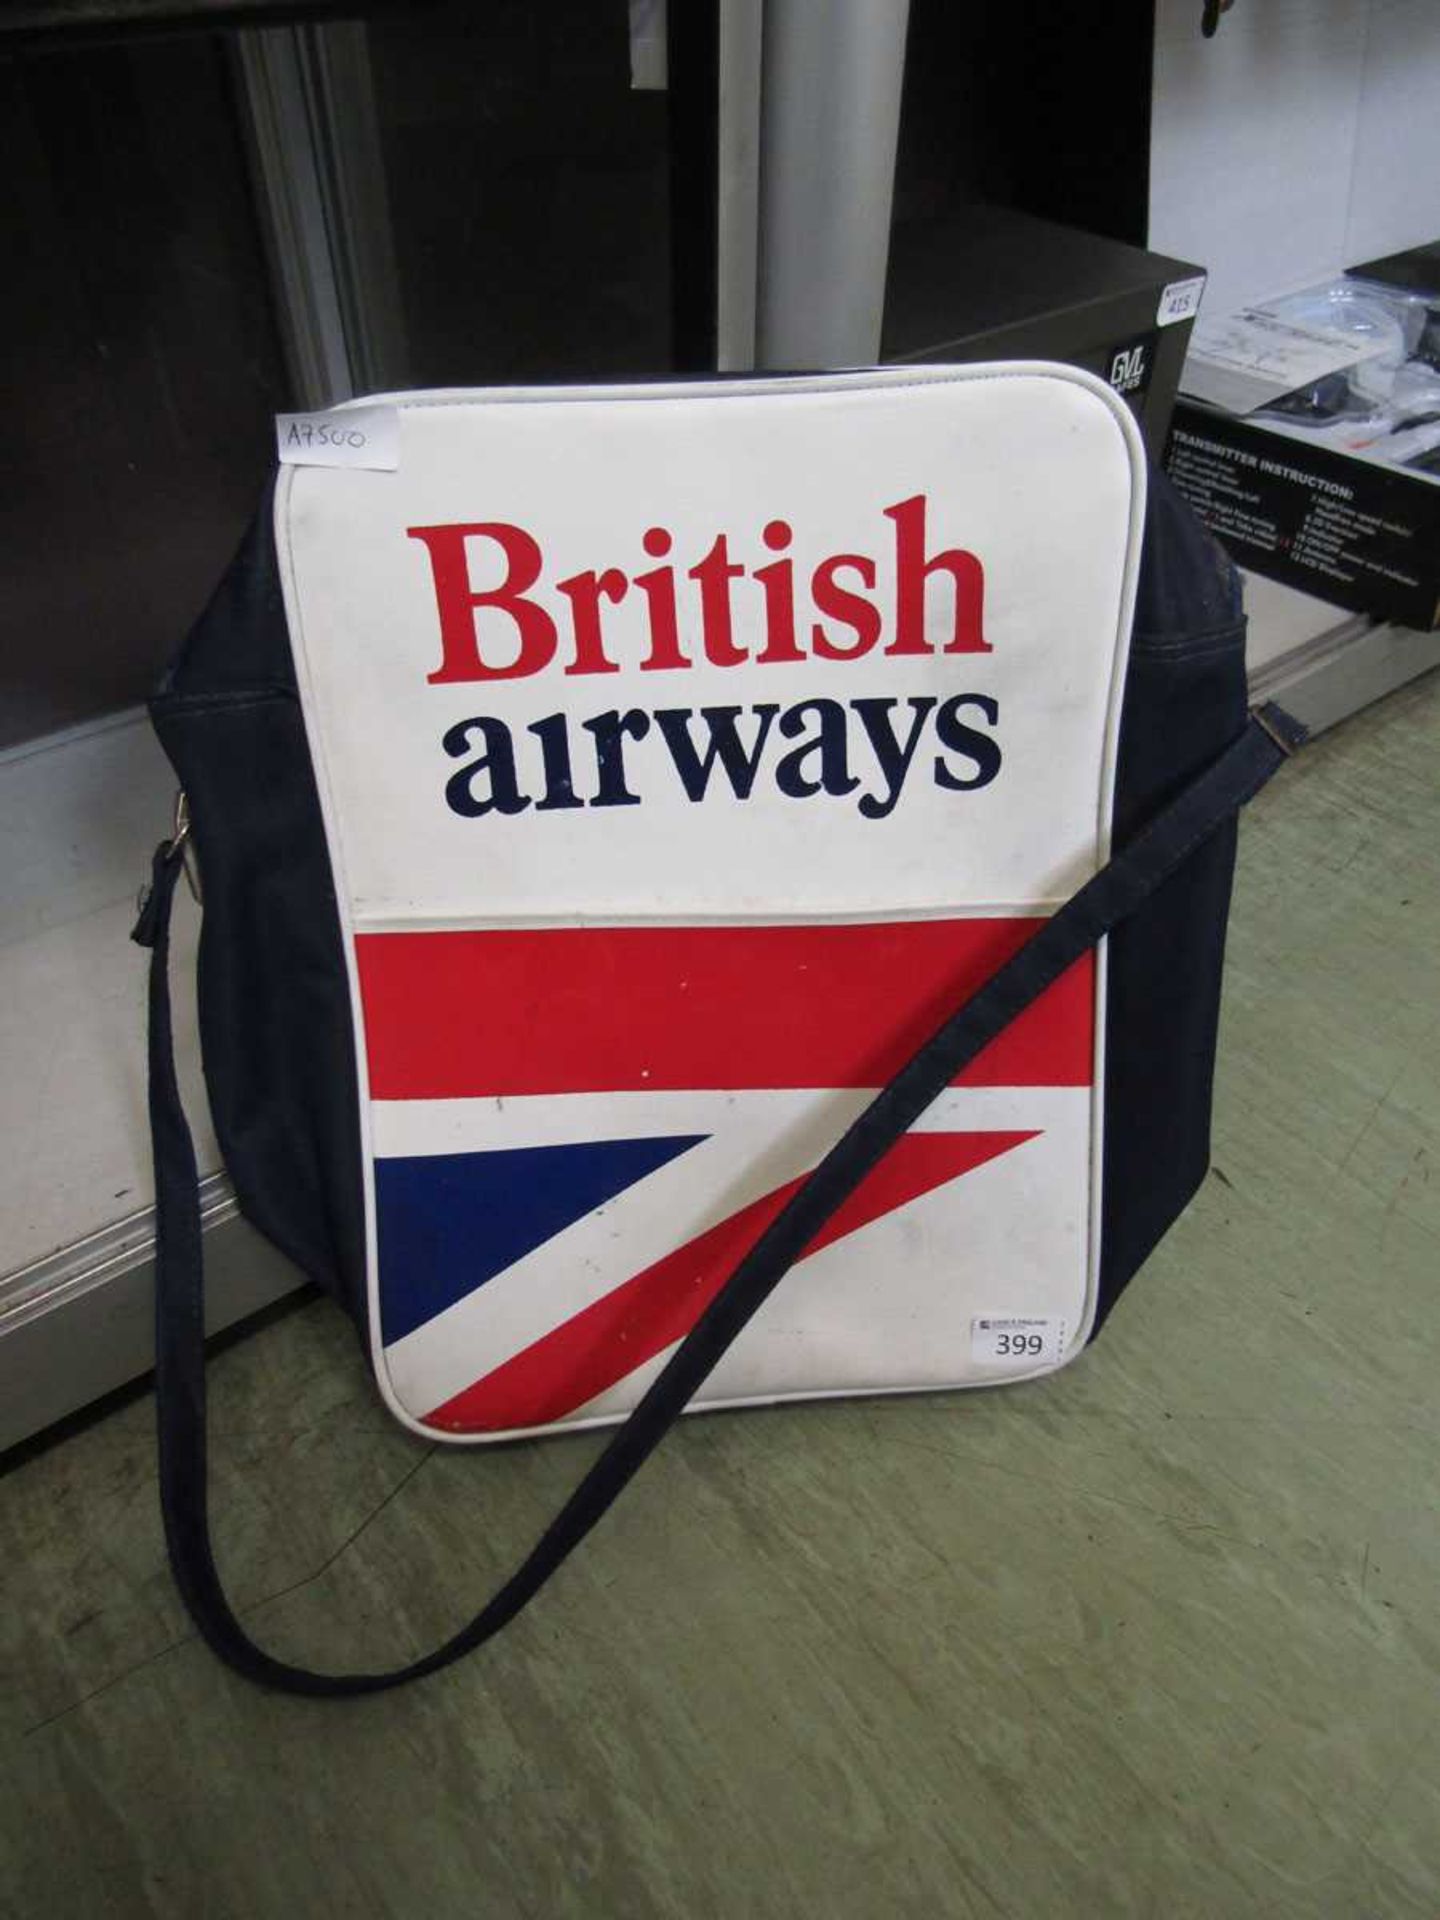 A 1960s/70s British Airways bag